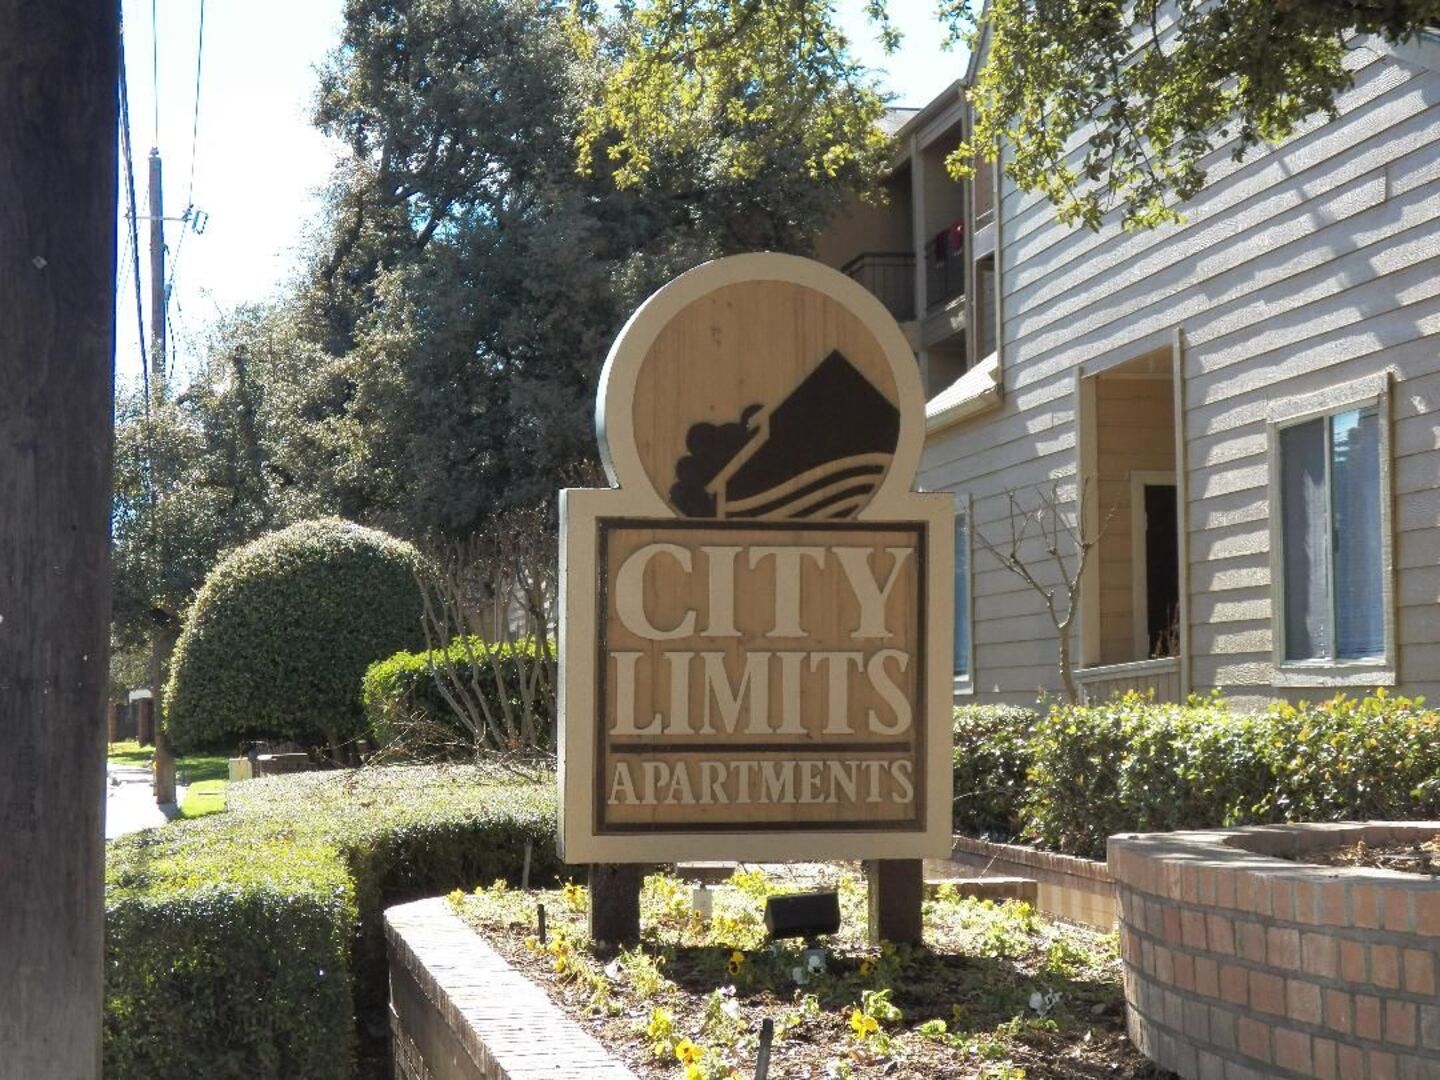 City Limits Apartments